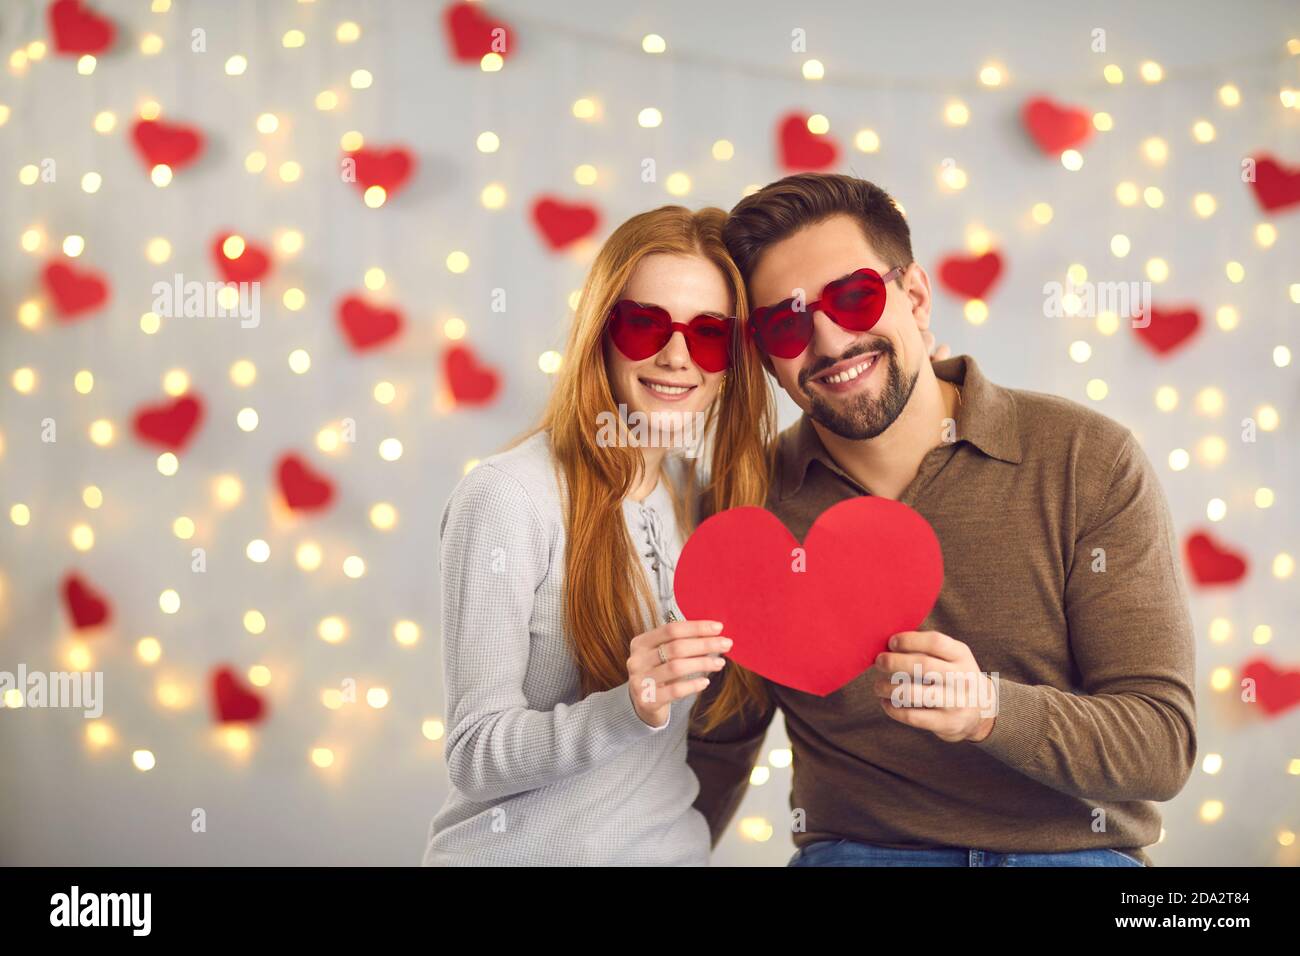 Giovane felice coppia amorevole in occhiali a forma di cuore in piedi e. tenendo il cuore rosso grande nelle mani Foto Stock